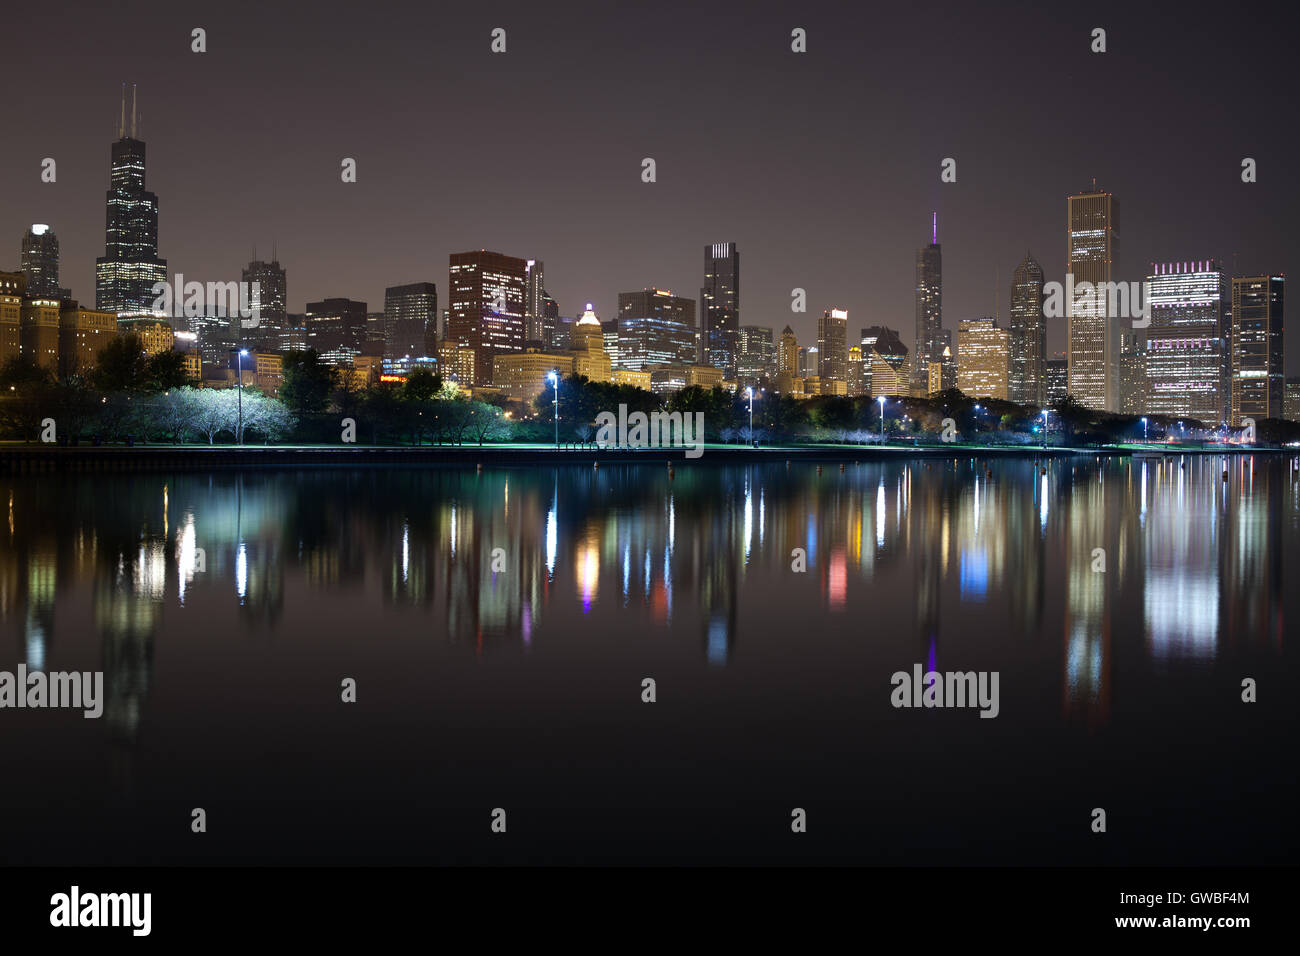 Skyline von Chicago. Bild von Chicago Skyline bei Nacht mit Reflexion auf die Lichter der Stadt im Lake Michigan. Stockfoto